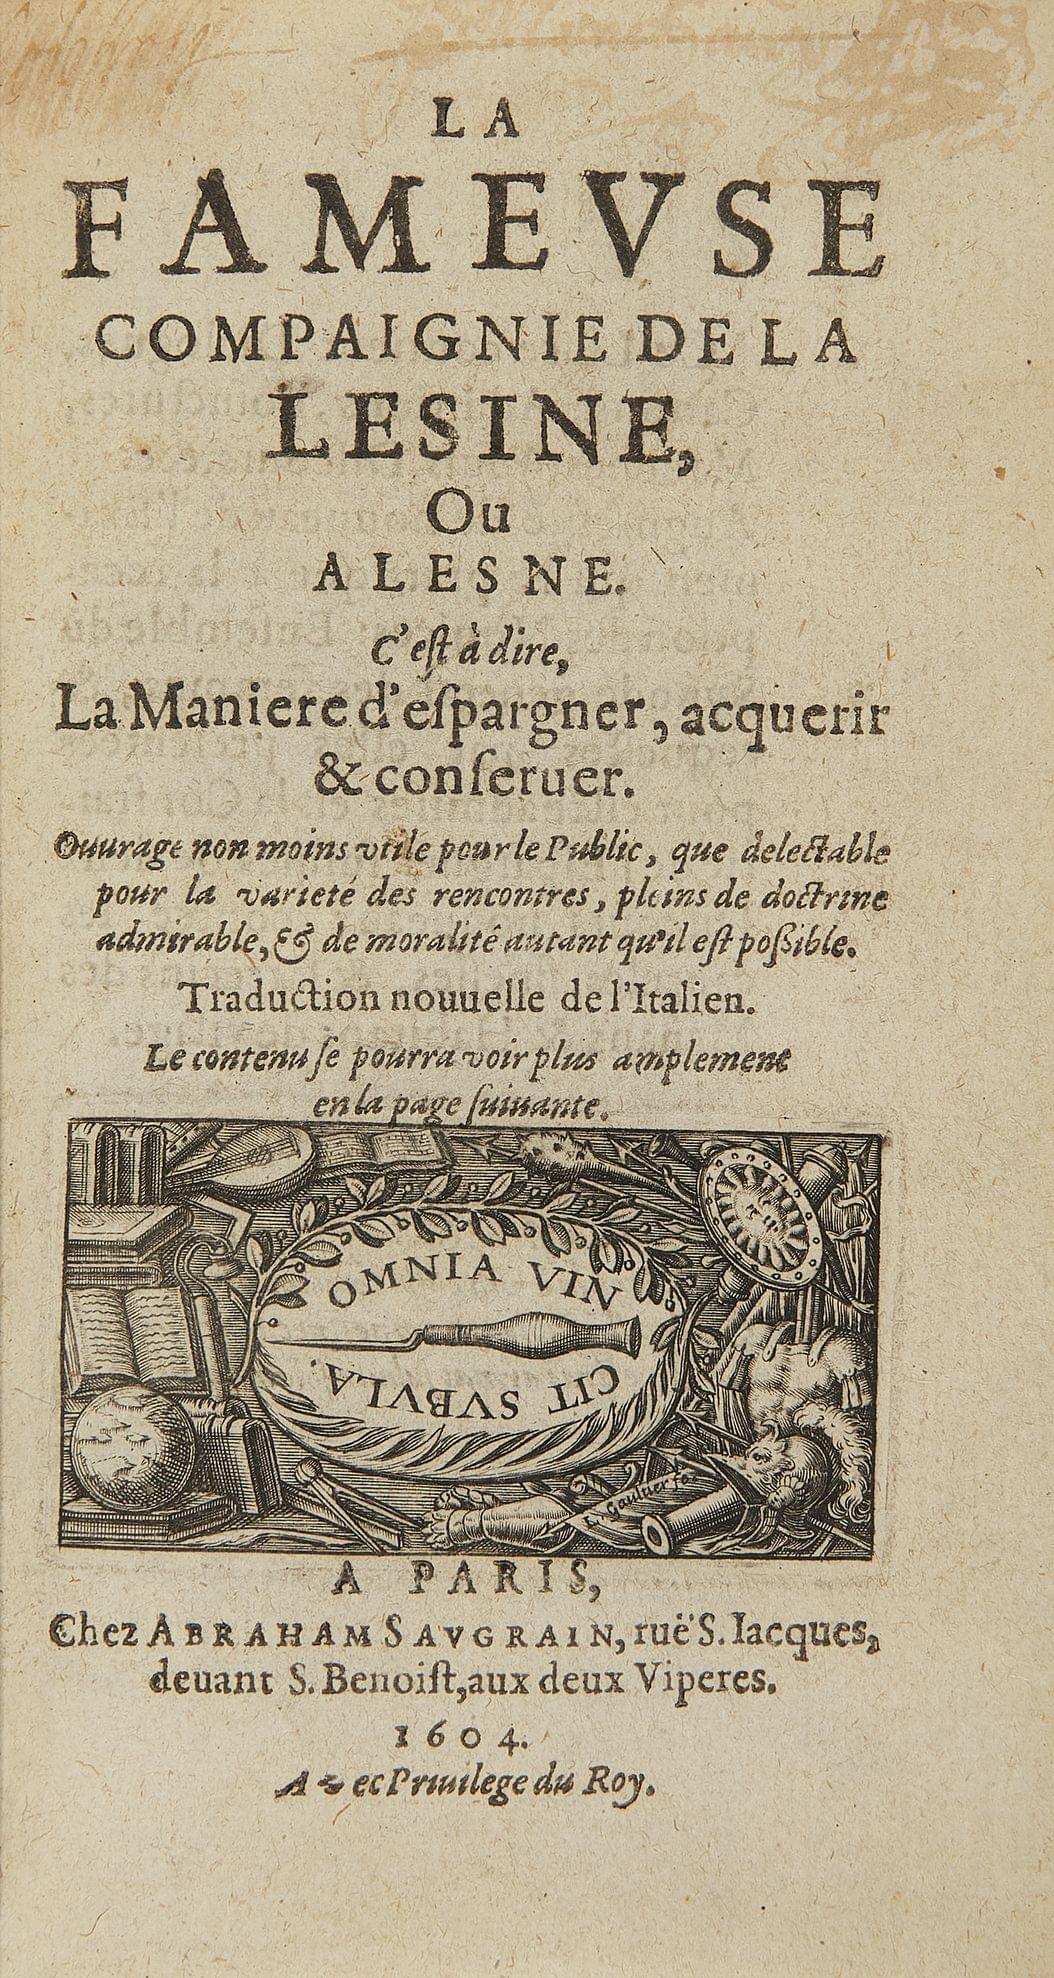 La Fameuse Compagnie de la Lesine. Paris, Saugrain, 1604; 